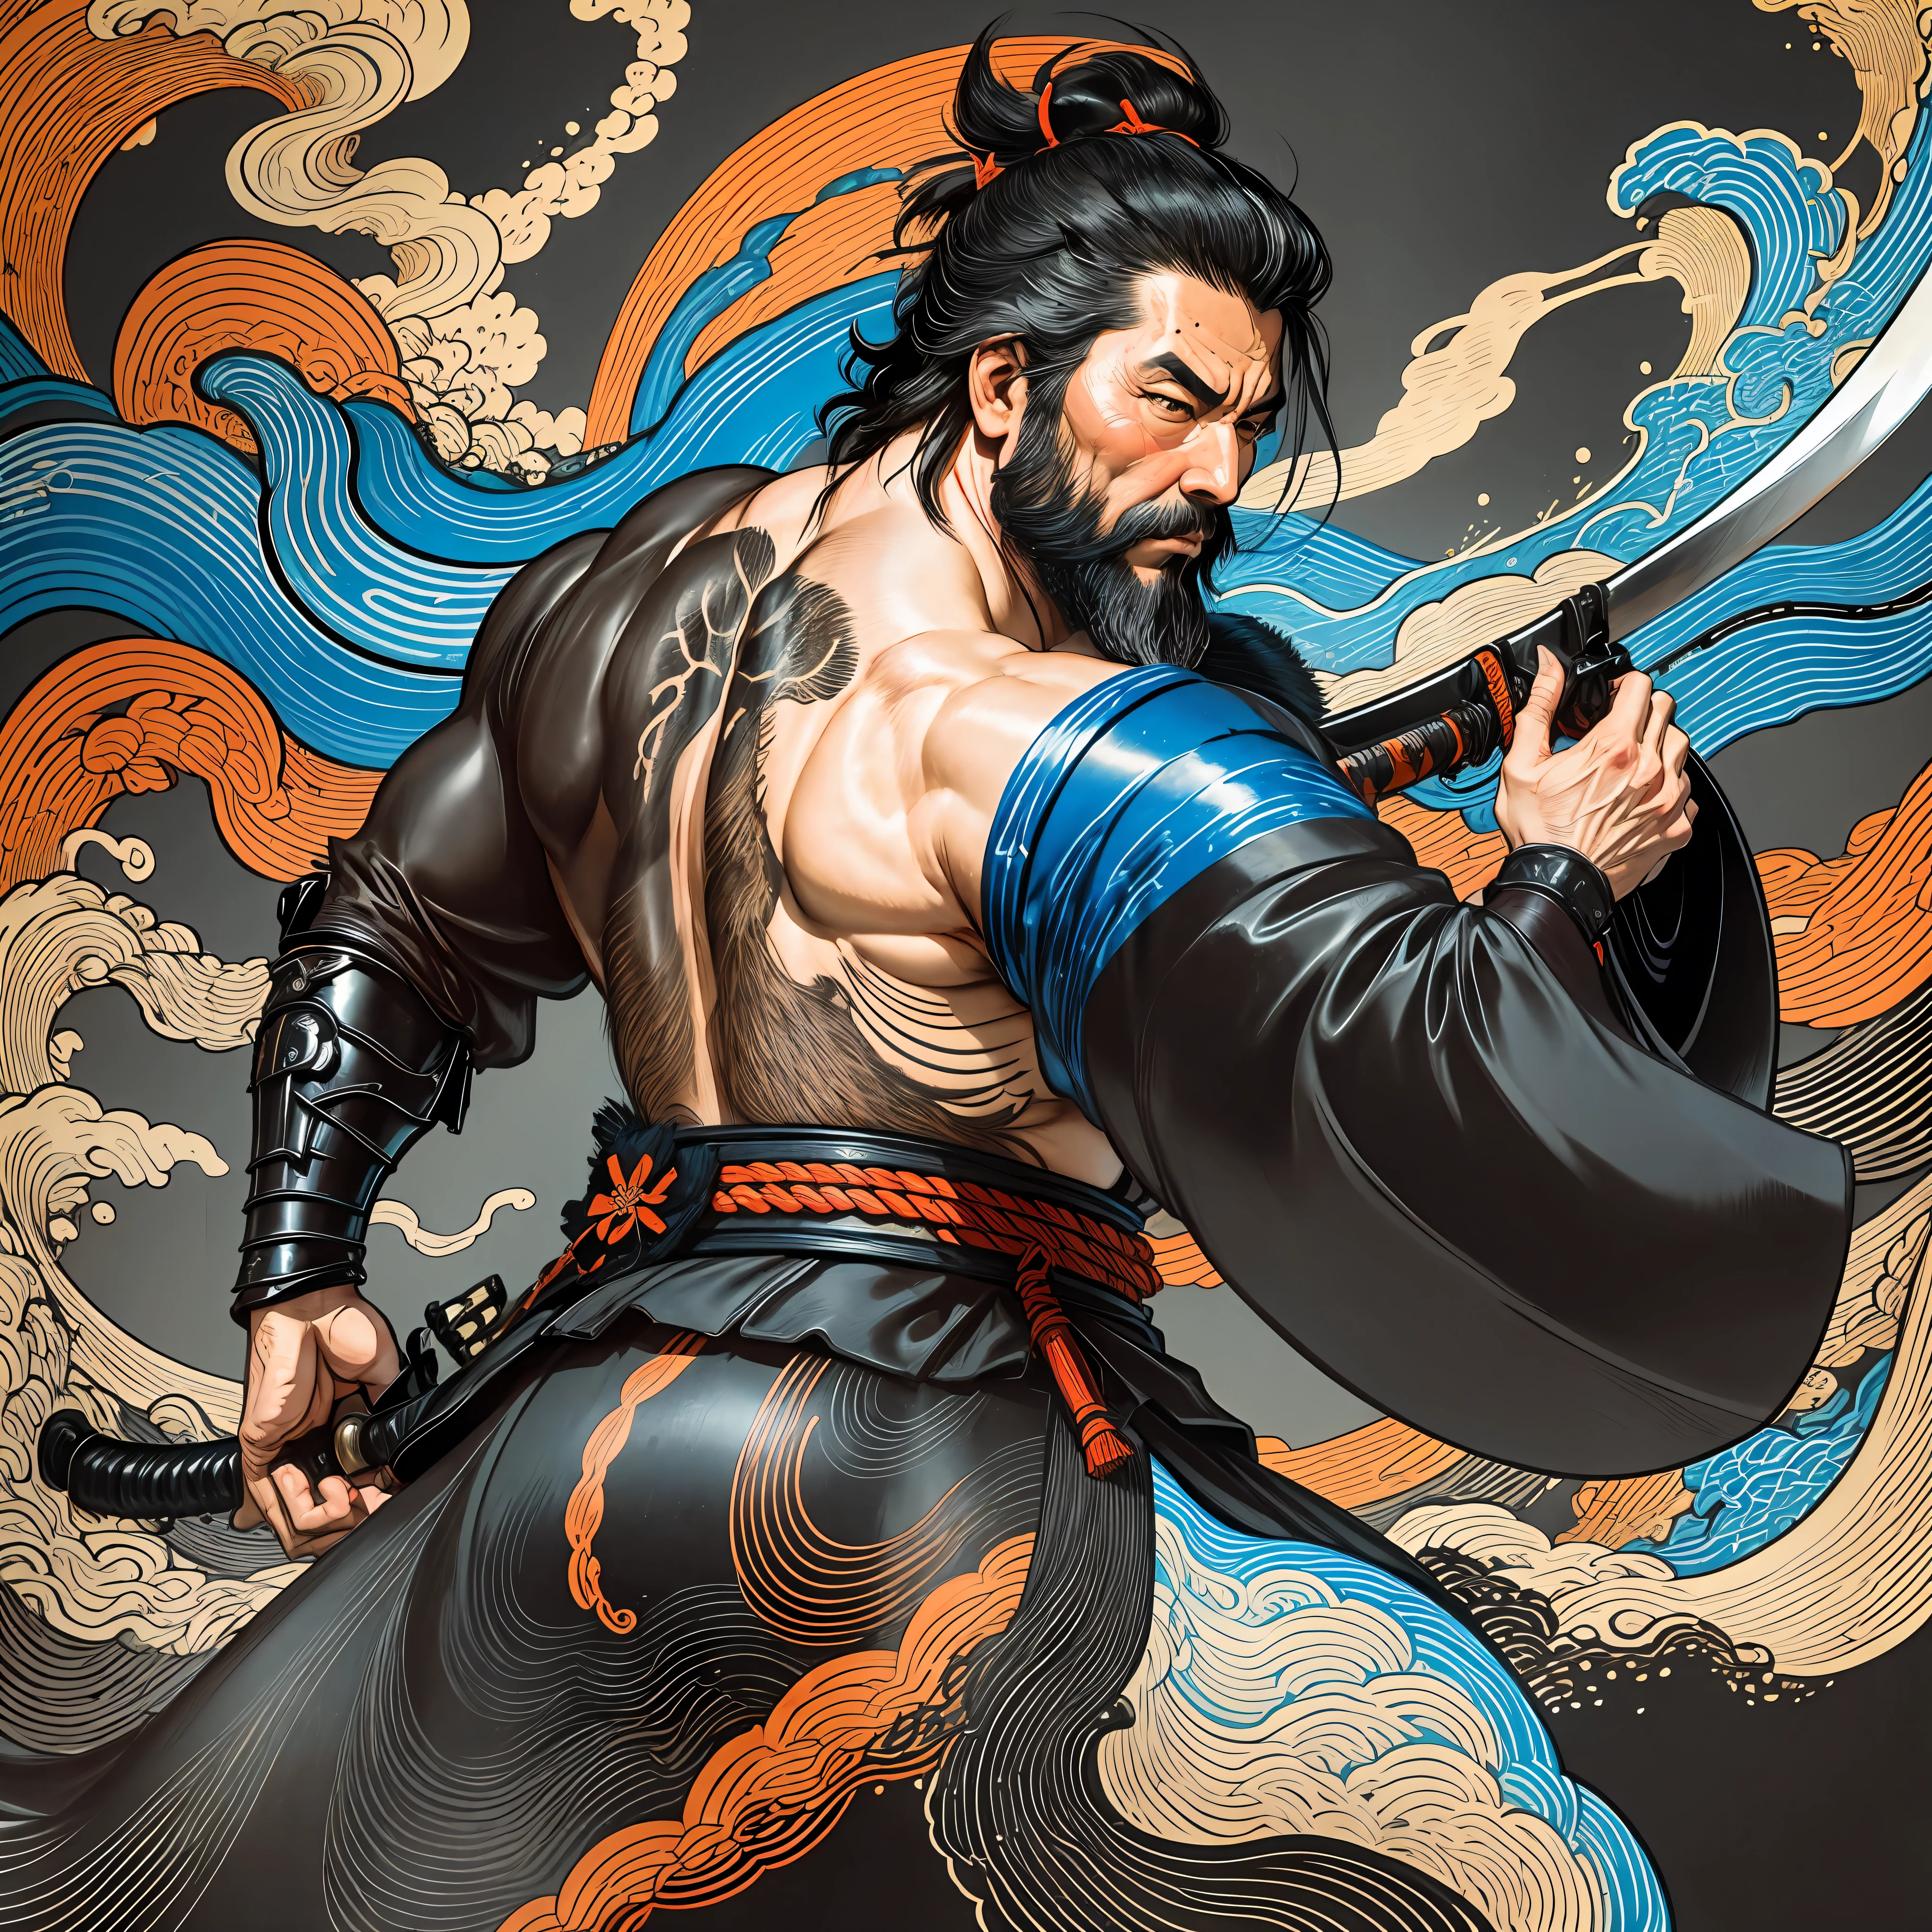 Es una pintura de cuerpo entero con colores naturales con dibujos lineales al estilo Katsushika Hokusai.. El espadachín Miyamoto Musashi tiene un cuerpo grande como el de un hombre fuerte.. Samurái de Japón. Tiene una expresión de determinación digna pero varonil., Pelo negro corto, y un corto, barba recortada. La parte superior de su cuerpo está cubierta con un kimono negro y su hakama llega hasta las rodillas.. En su mano derecha sostiene una espada japonesa con una parte más larga.. en la más alta calidad, en alta resolución, estilo ukiyo-e, relámpagos y llamas arremolinadas de la obra maestra. Miyamoto Musashi está de pie con la cara y el cuerpo mirando hacia adelante., su espalda recta.